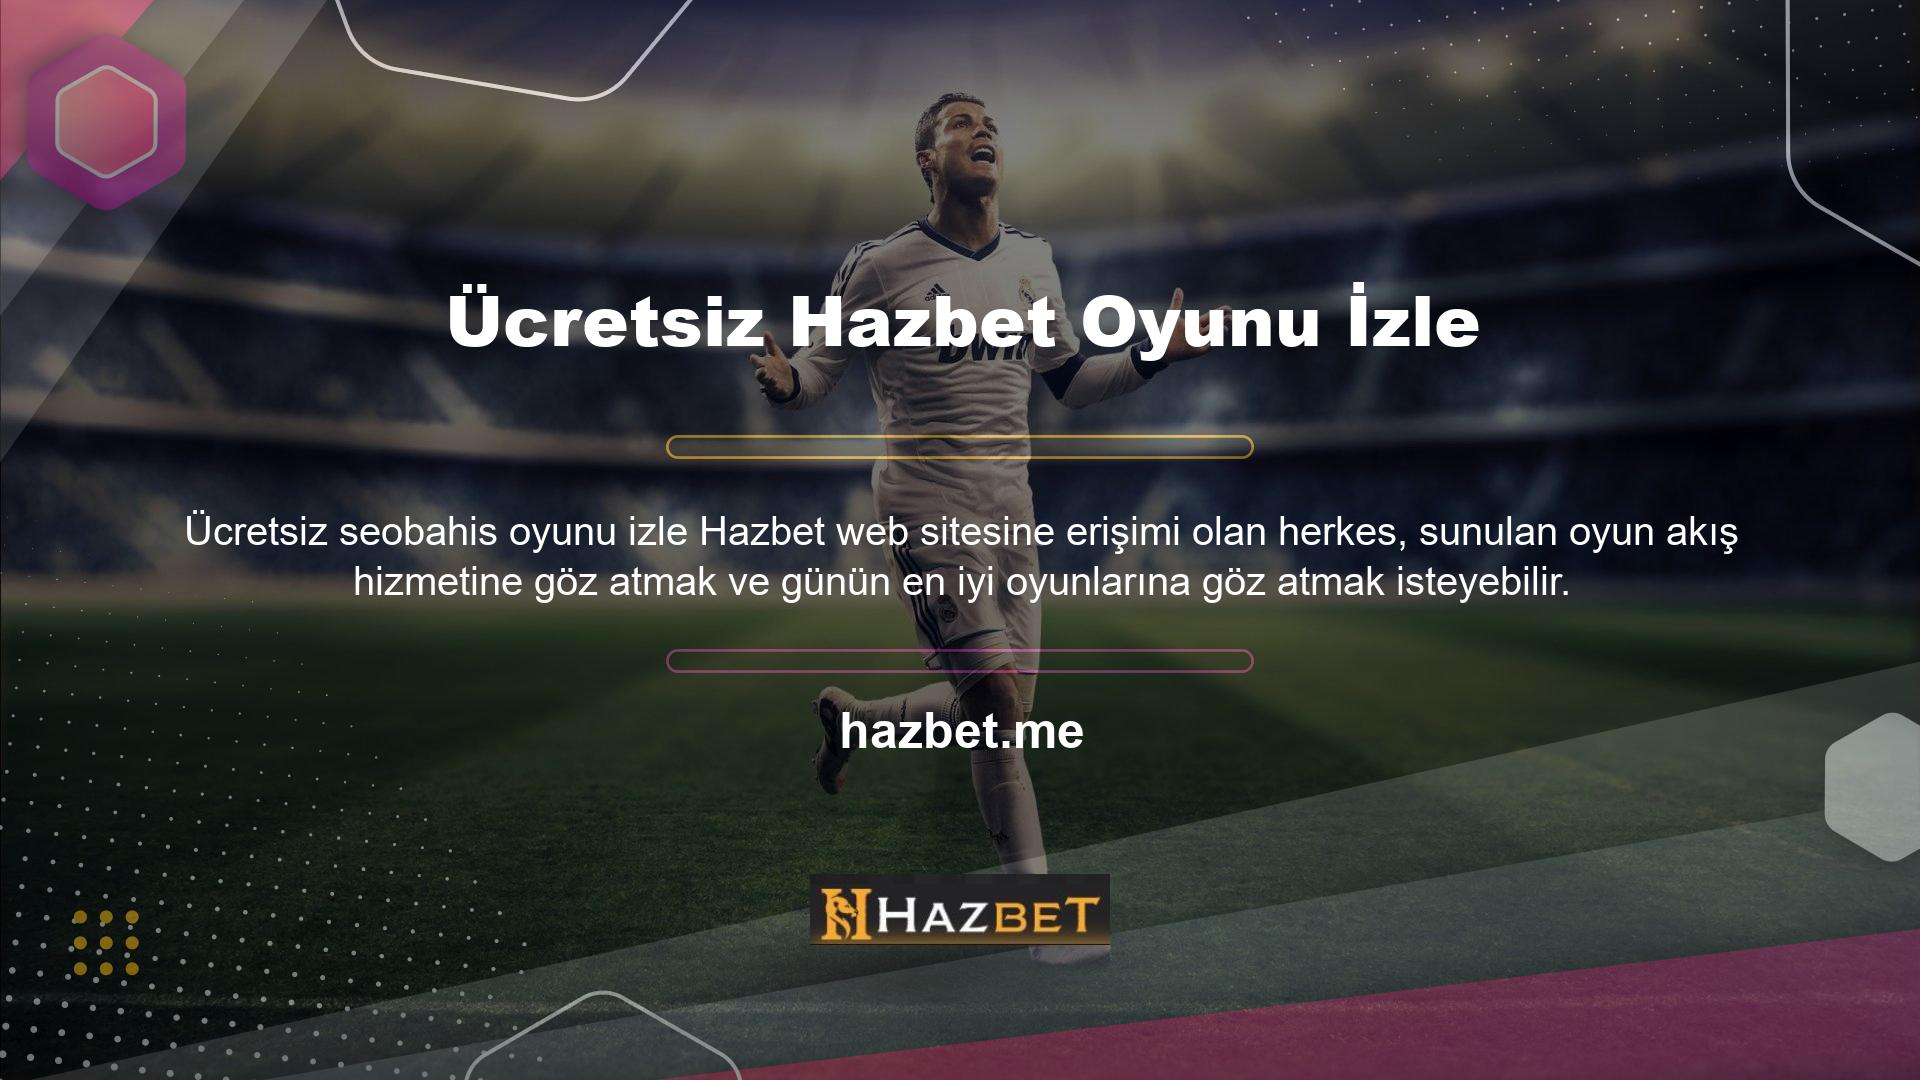 Tüm Türkiye Spor Toto Spel Lig maçları Maç Yayın Akışı Listesindedir ve Türk kullanıcılar tüm maçları izleyebilirler